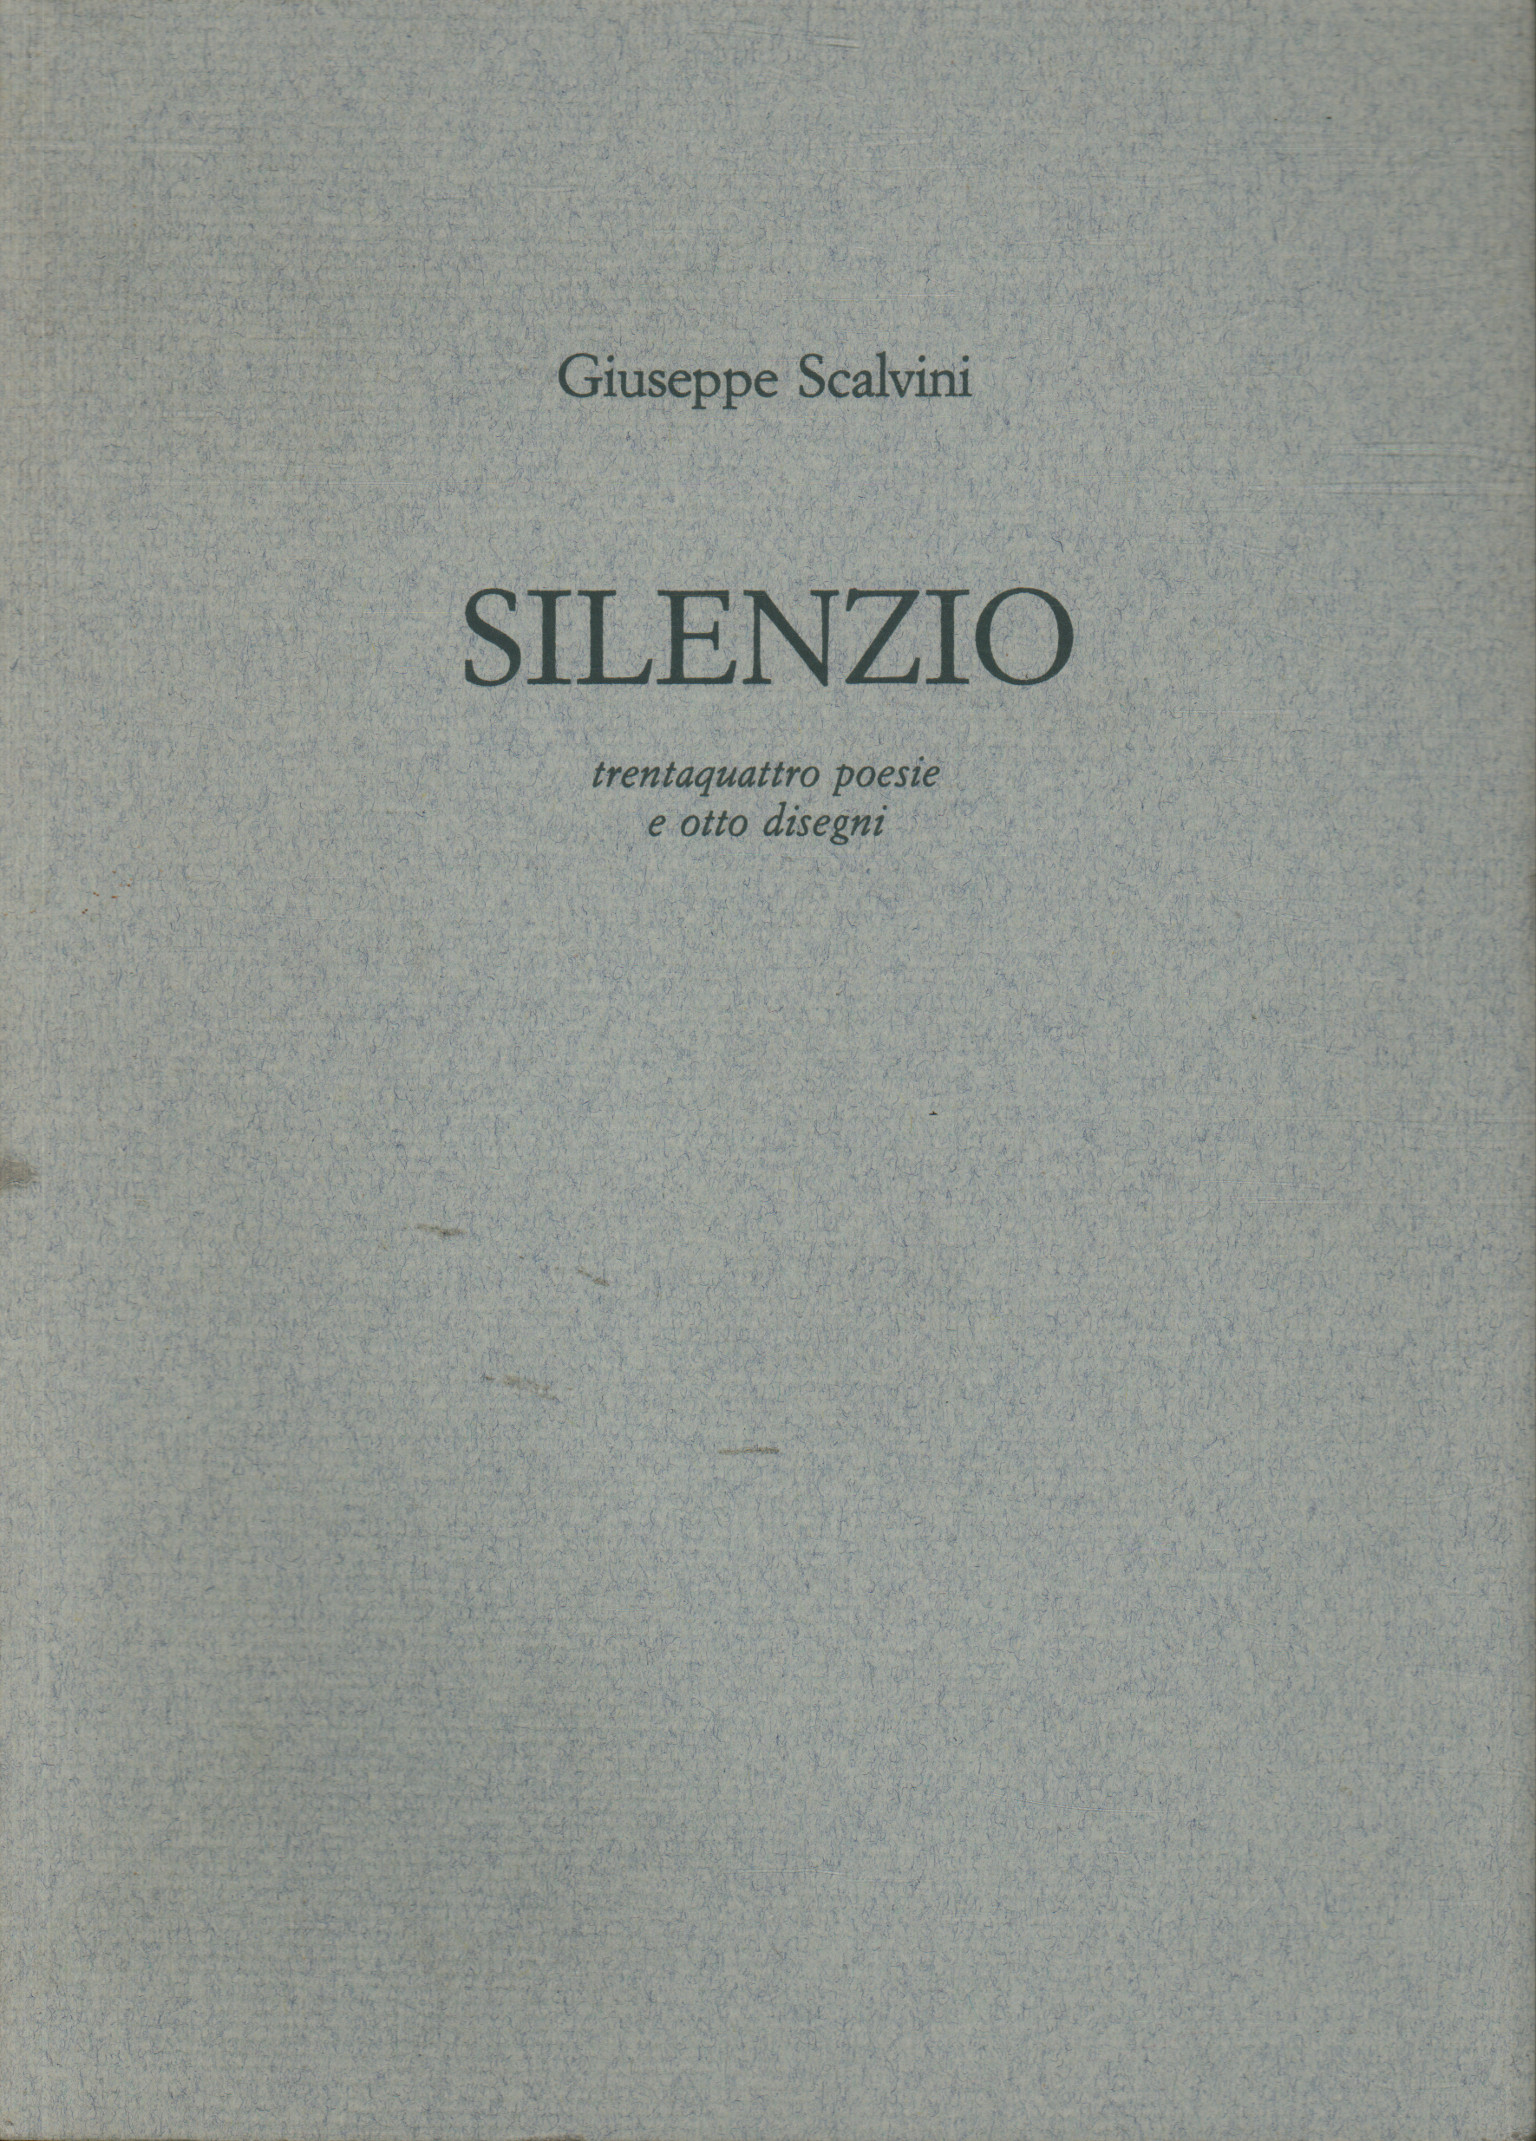 Silence, Giuseppe Scalvini